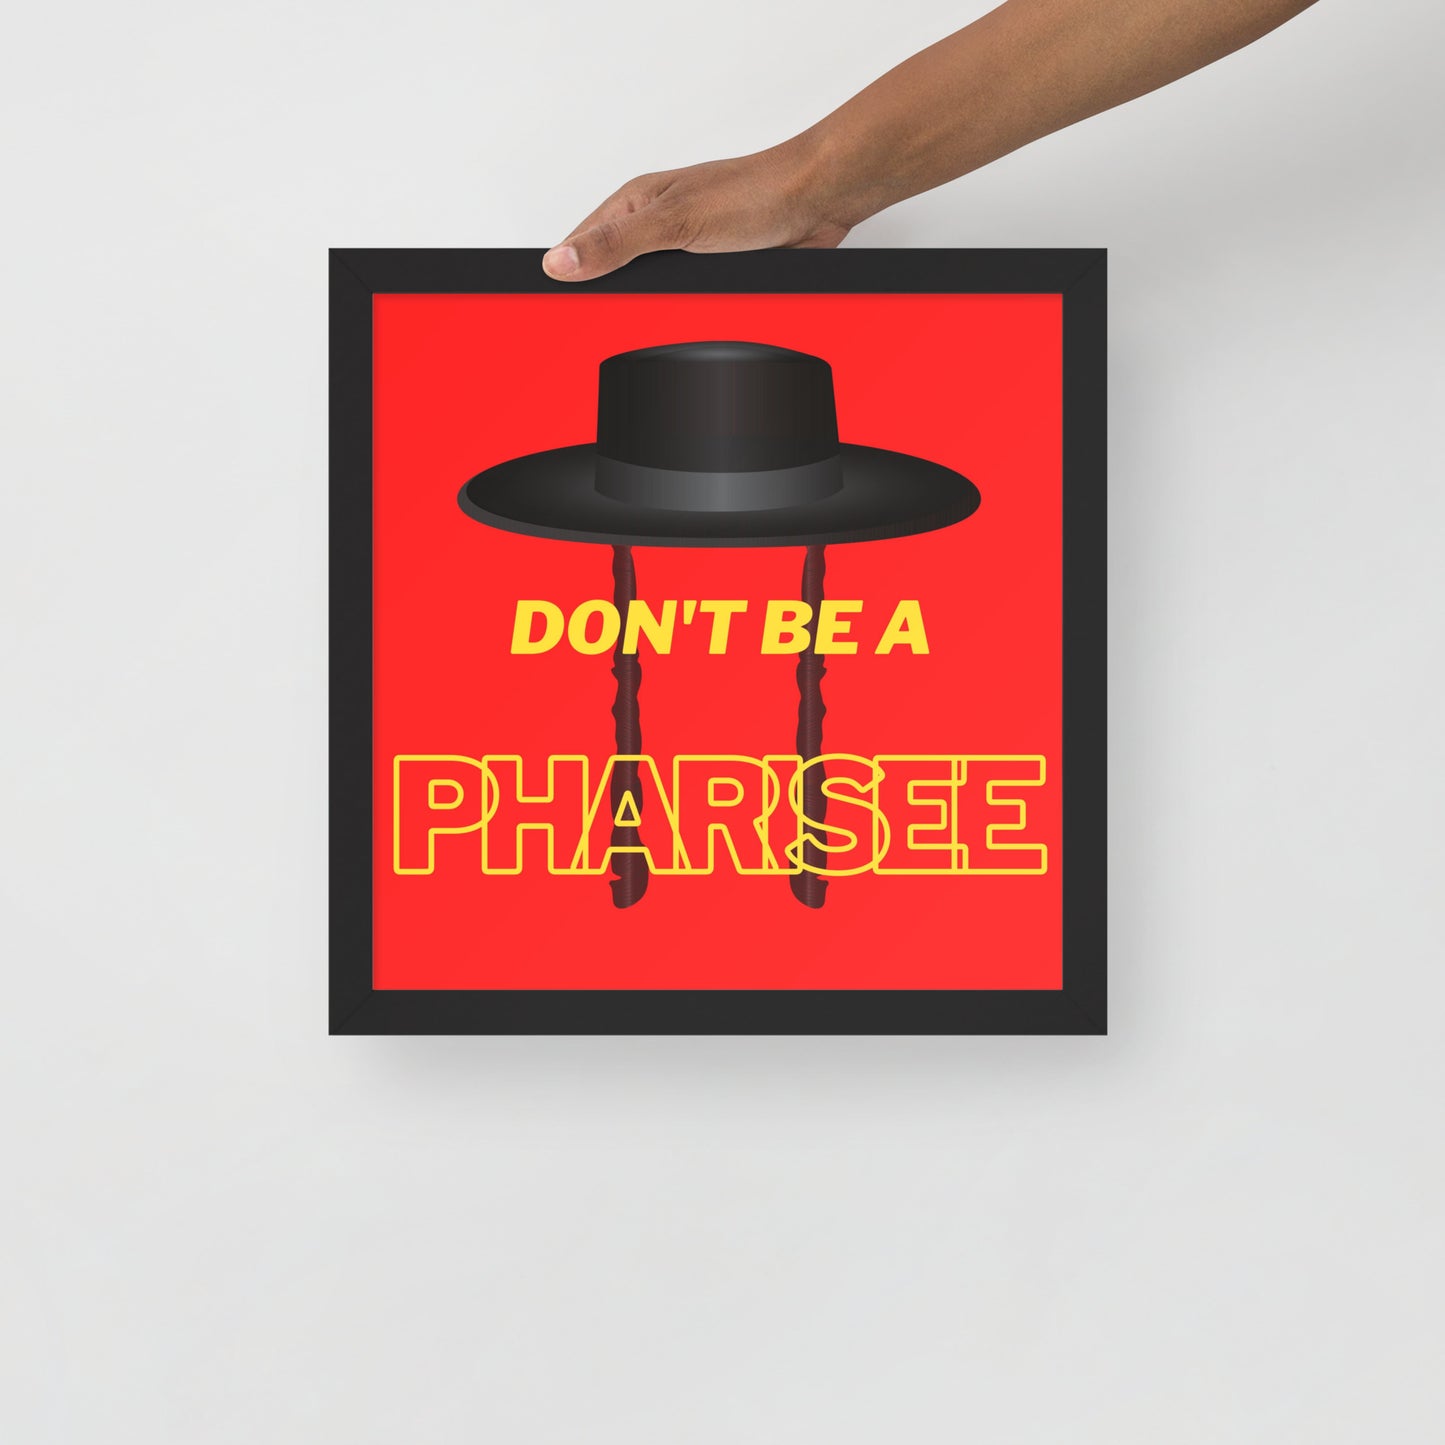 Framed poster - Don't be pharisee